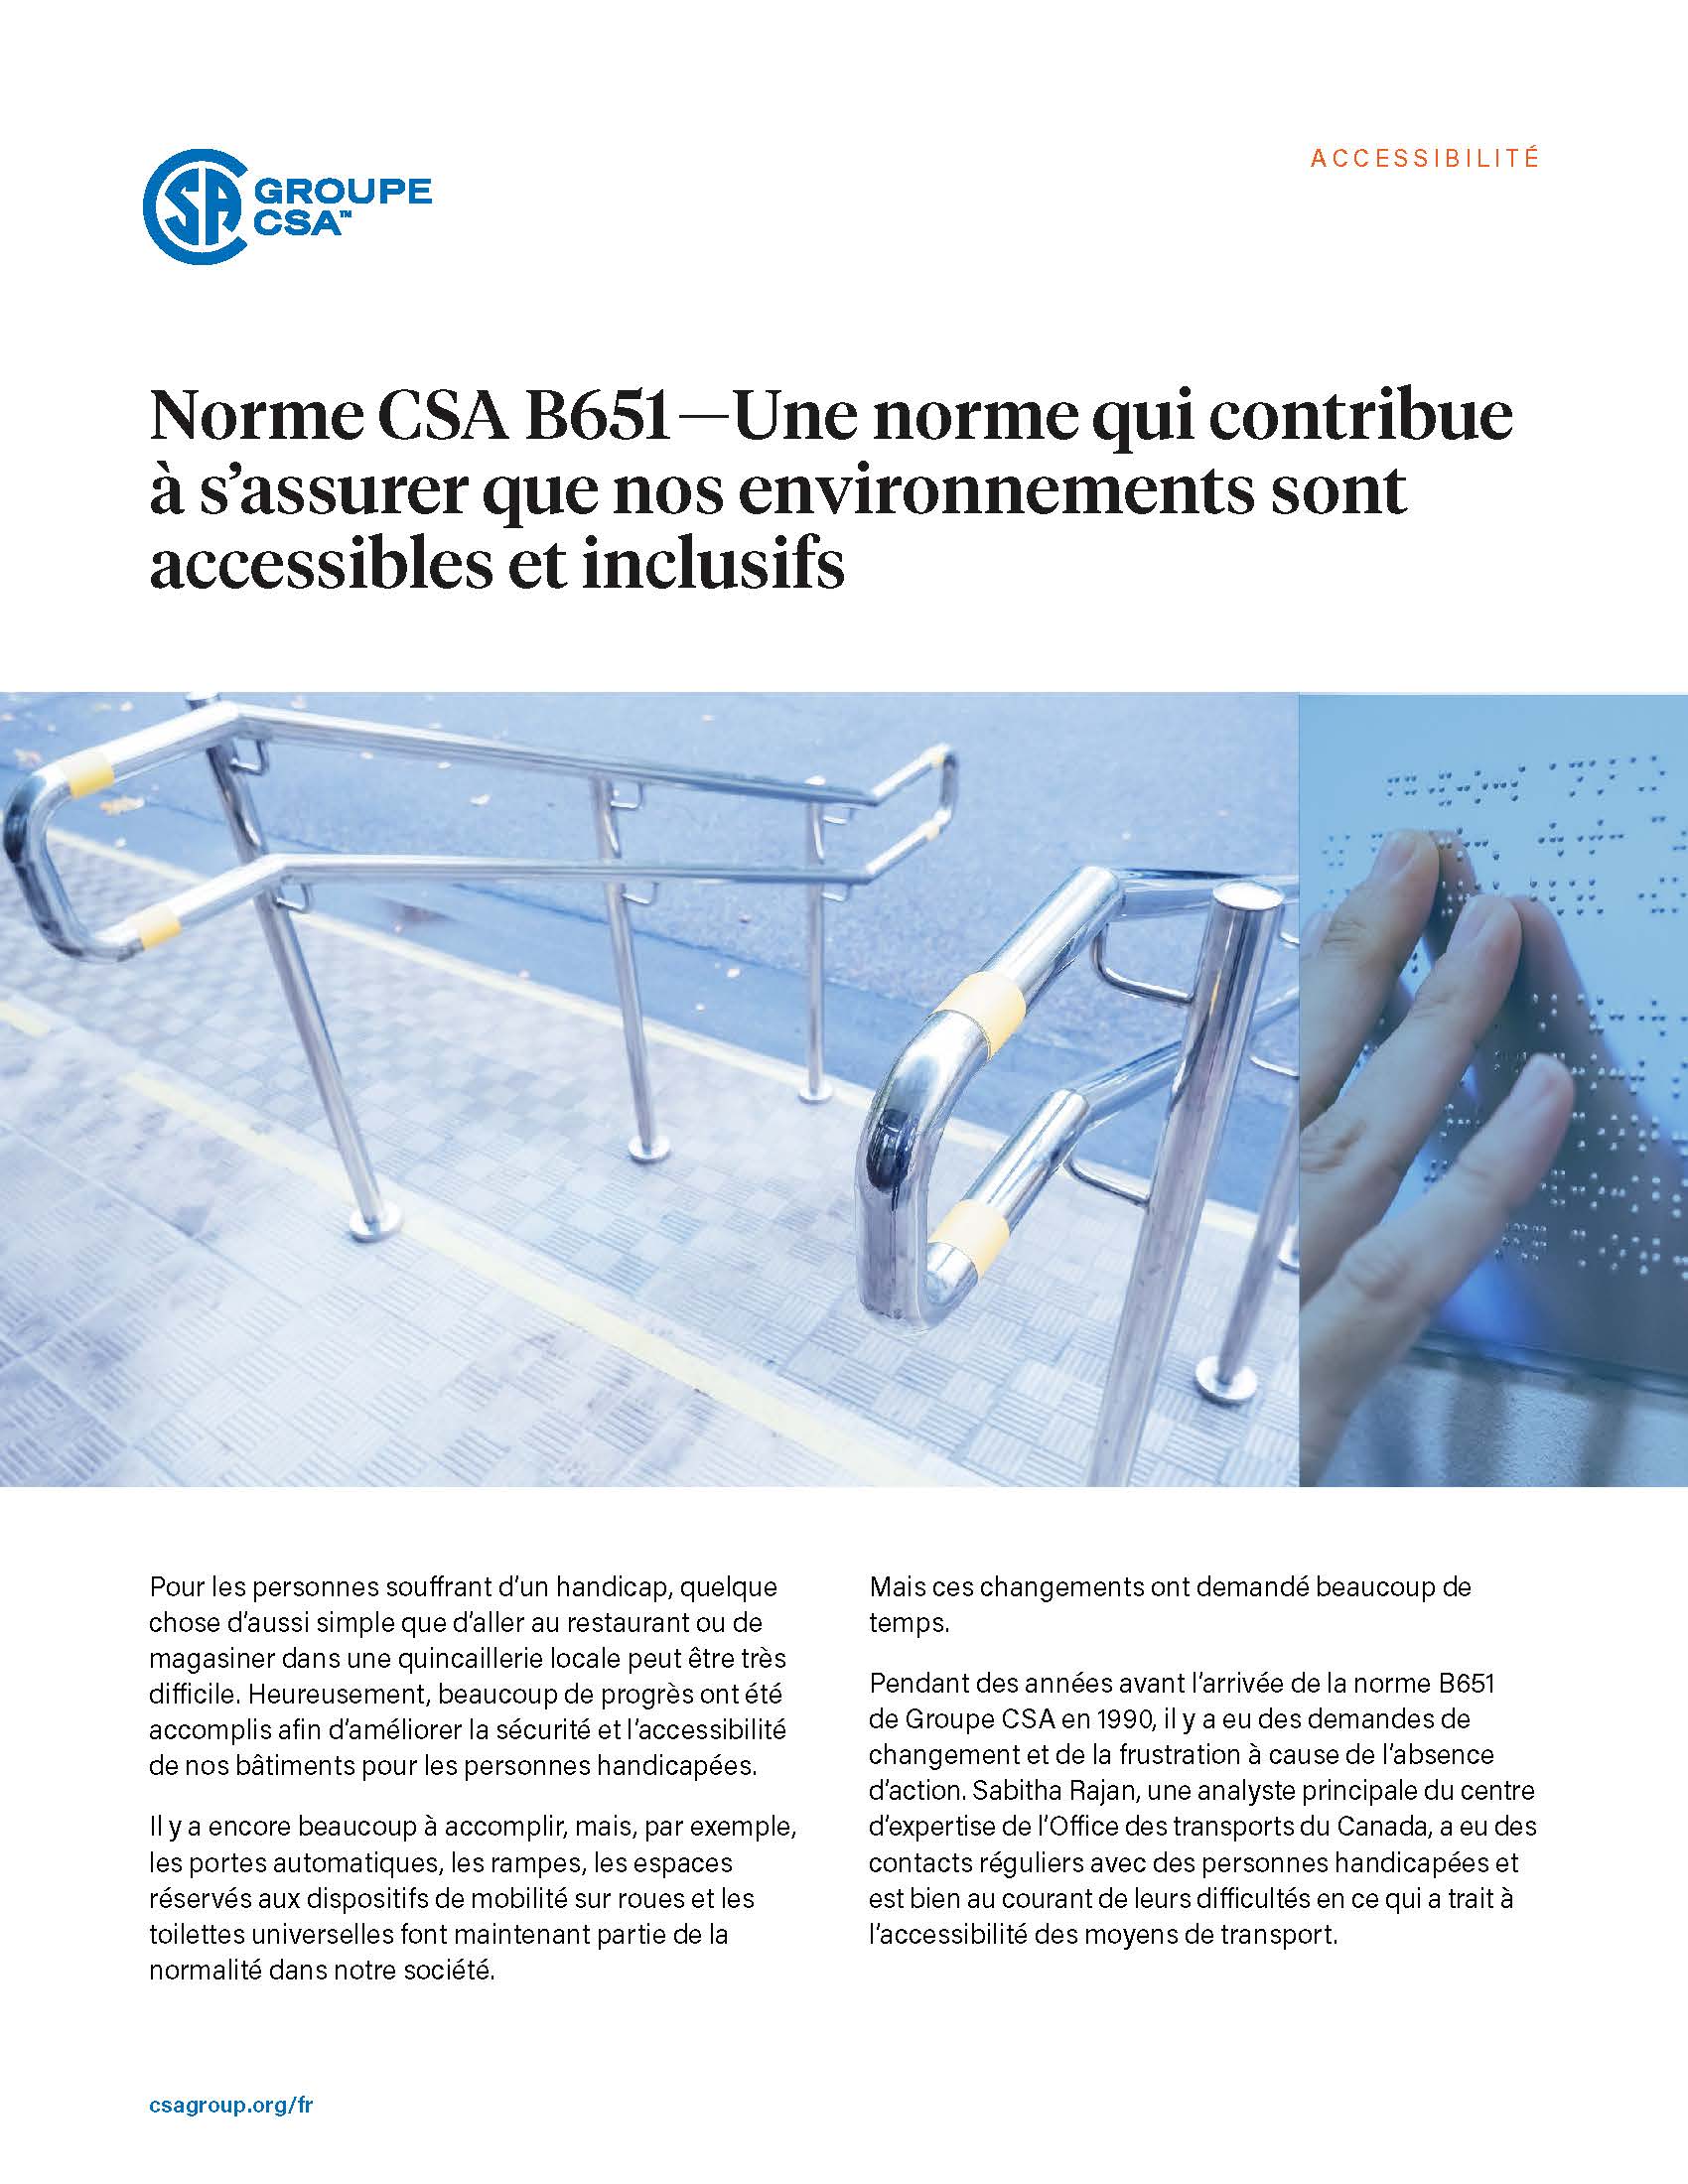 L'image sélectionnée. Page titre pour l’étude de cas “Norme CSA B651 — Une norme qui contribue à s’assurer que nos environnements sont accessibles et inclusifs.”